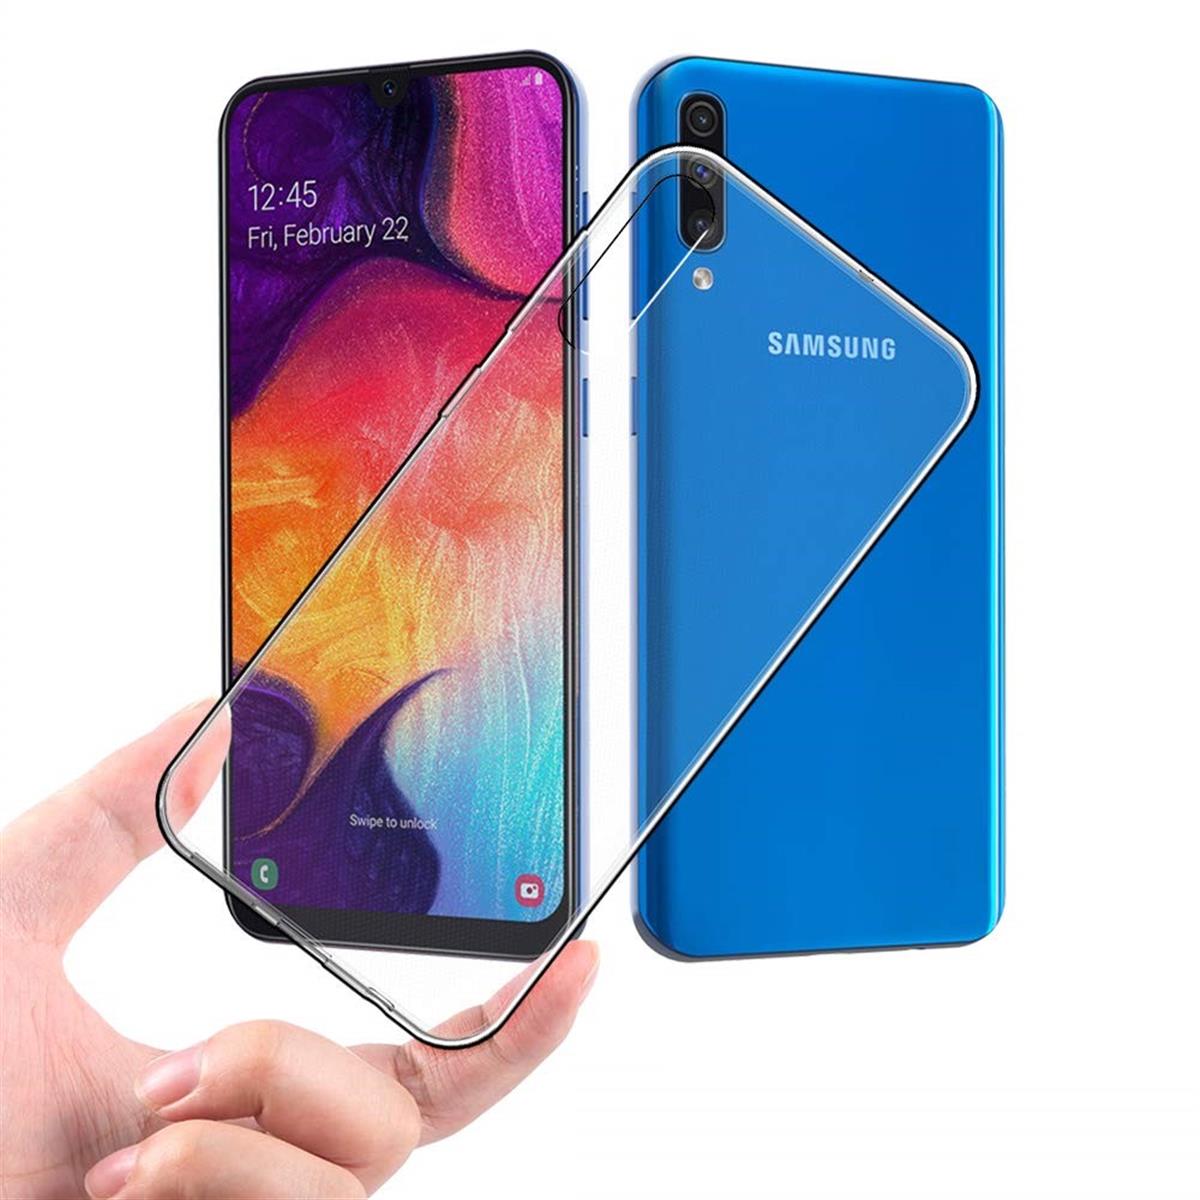 Hülle für Samsung Galaxy A50/A30s Handyhülle Cover Silikonhülle Case transparent